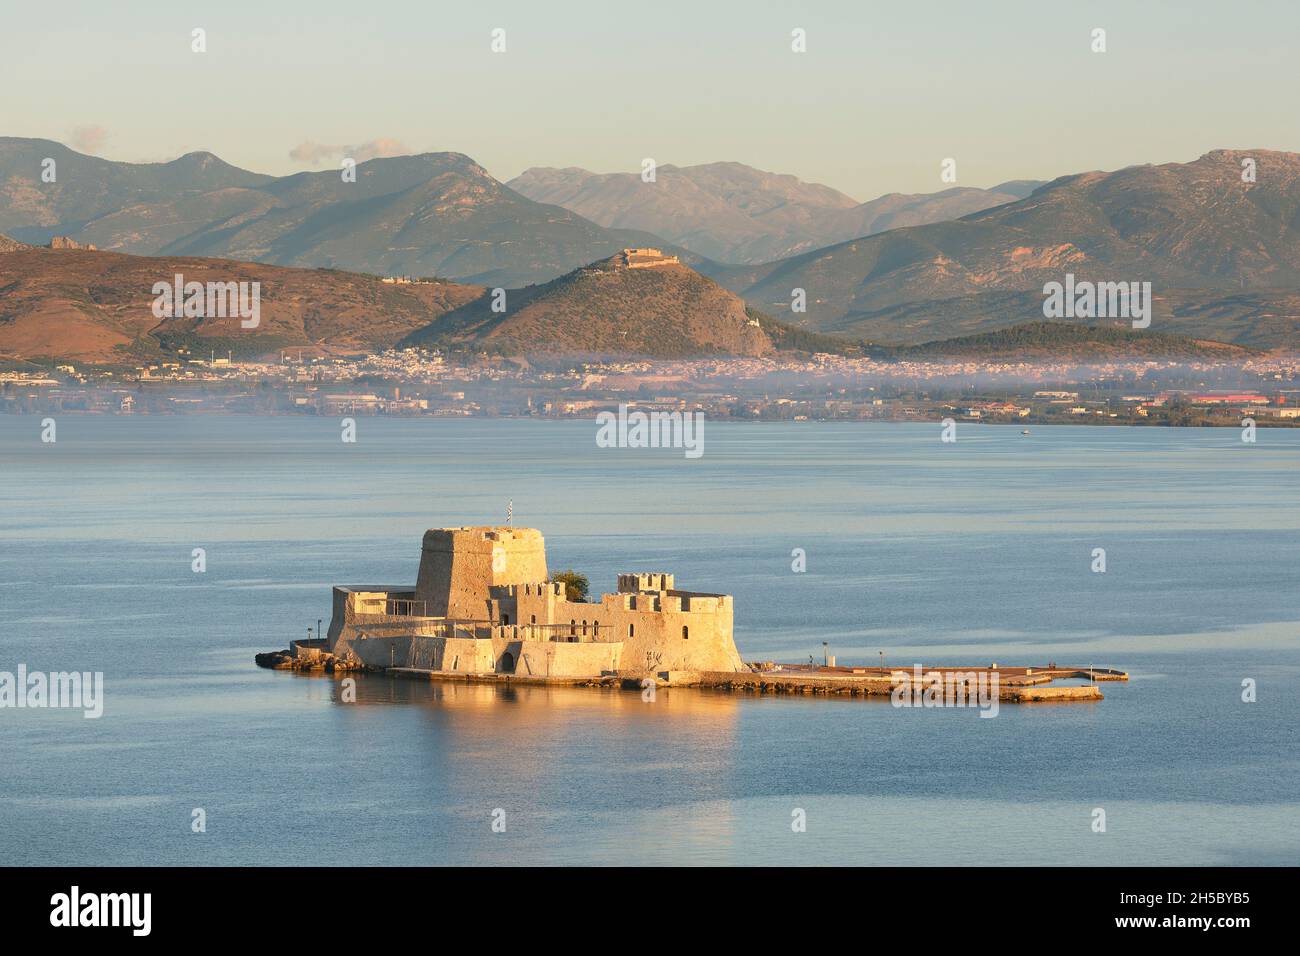 La forteresse de Vention du château de Bourtzi dans la baie de la ville de Nauplie avec l'ancien site d'Argos au loin dans le Péloponnèse de Grèce Banque D'Images